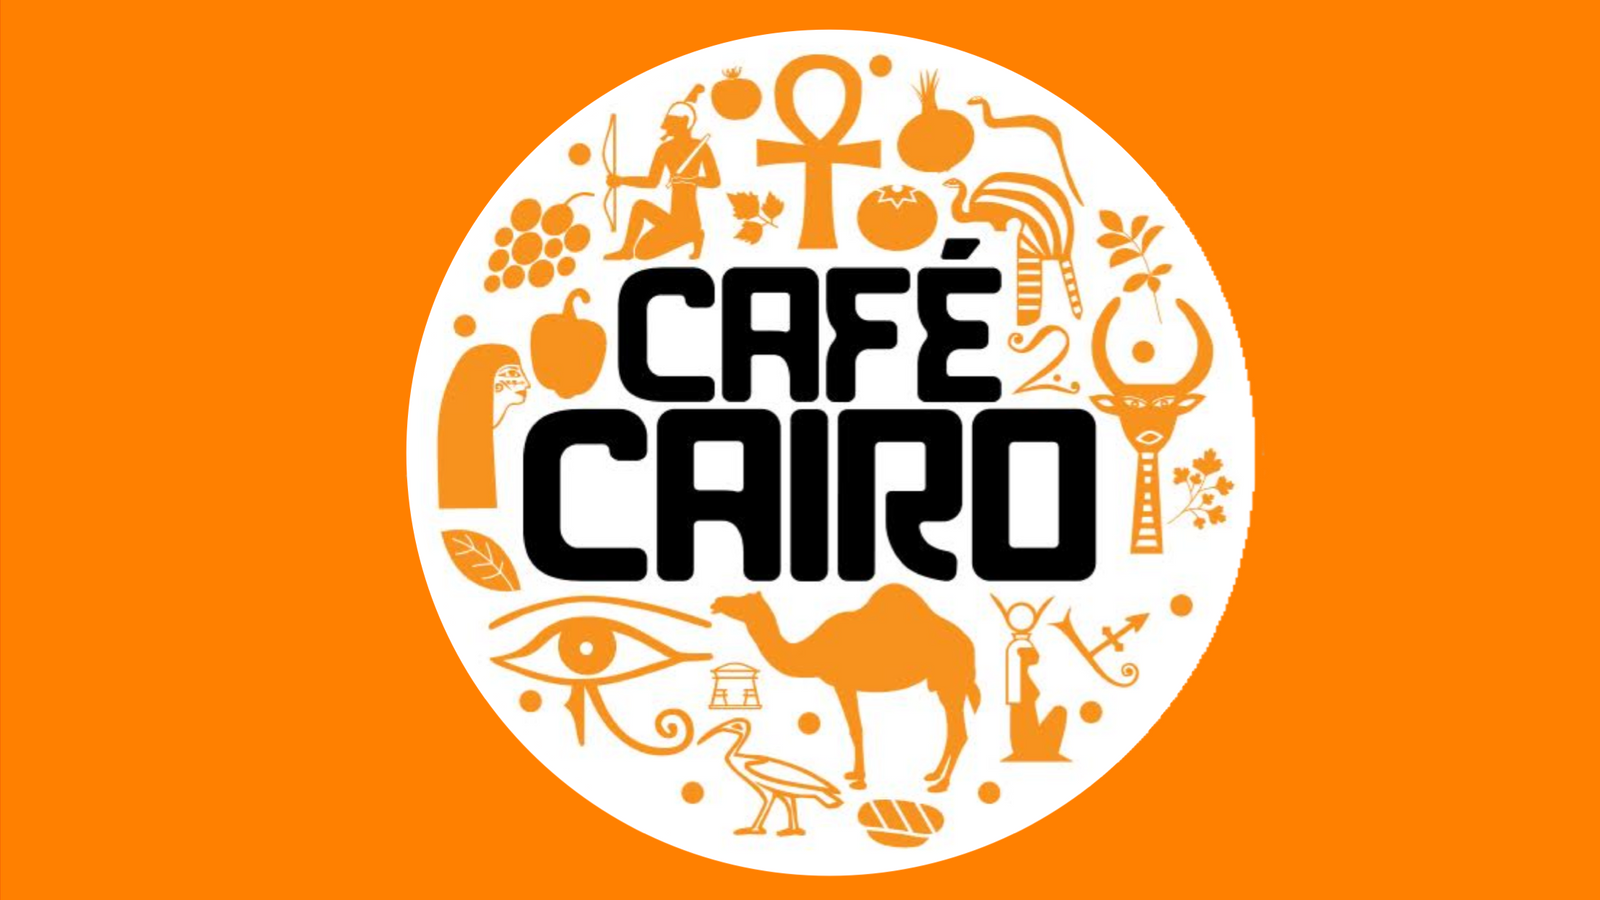 CAFE CAIRO